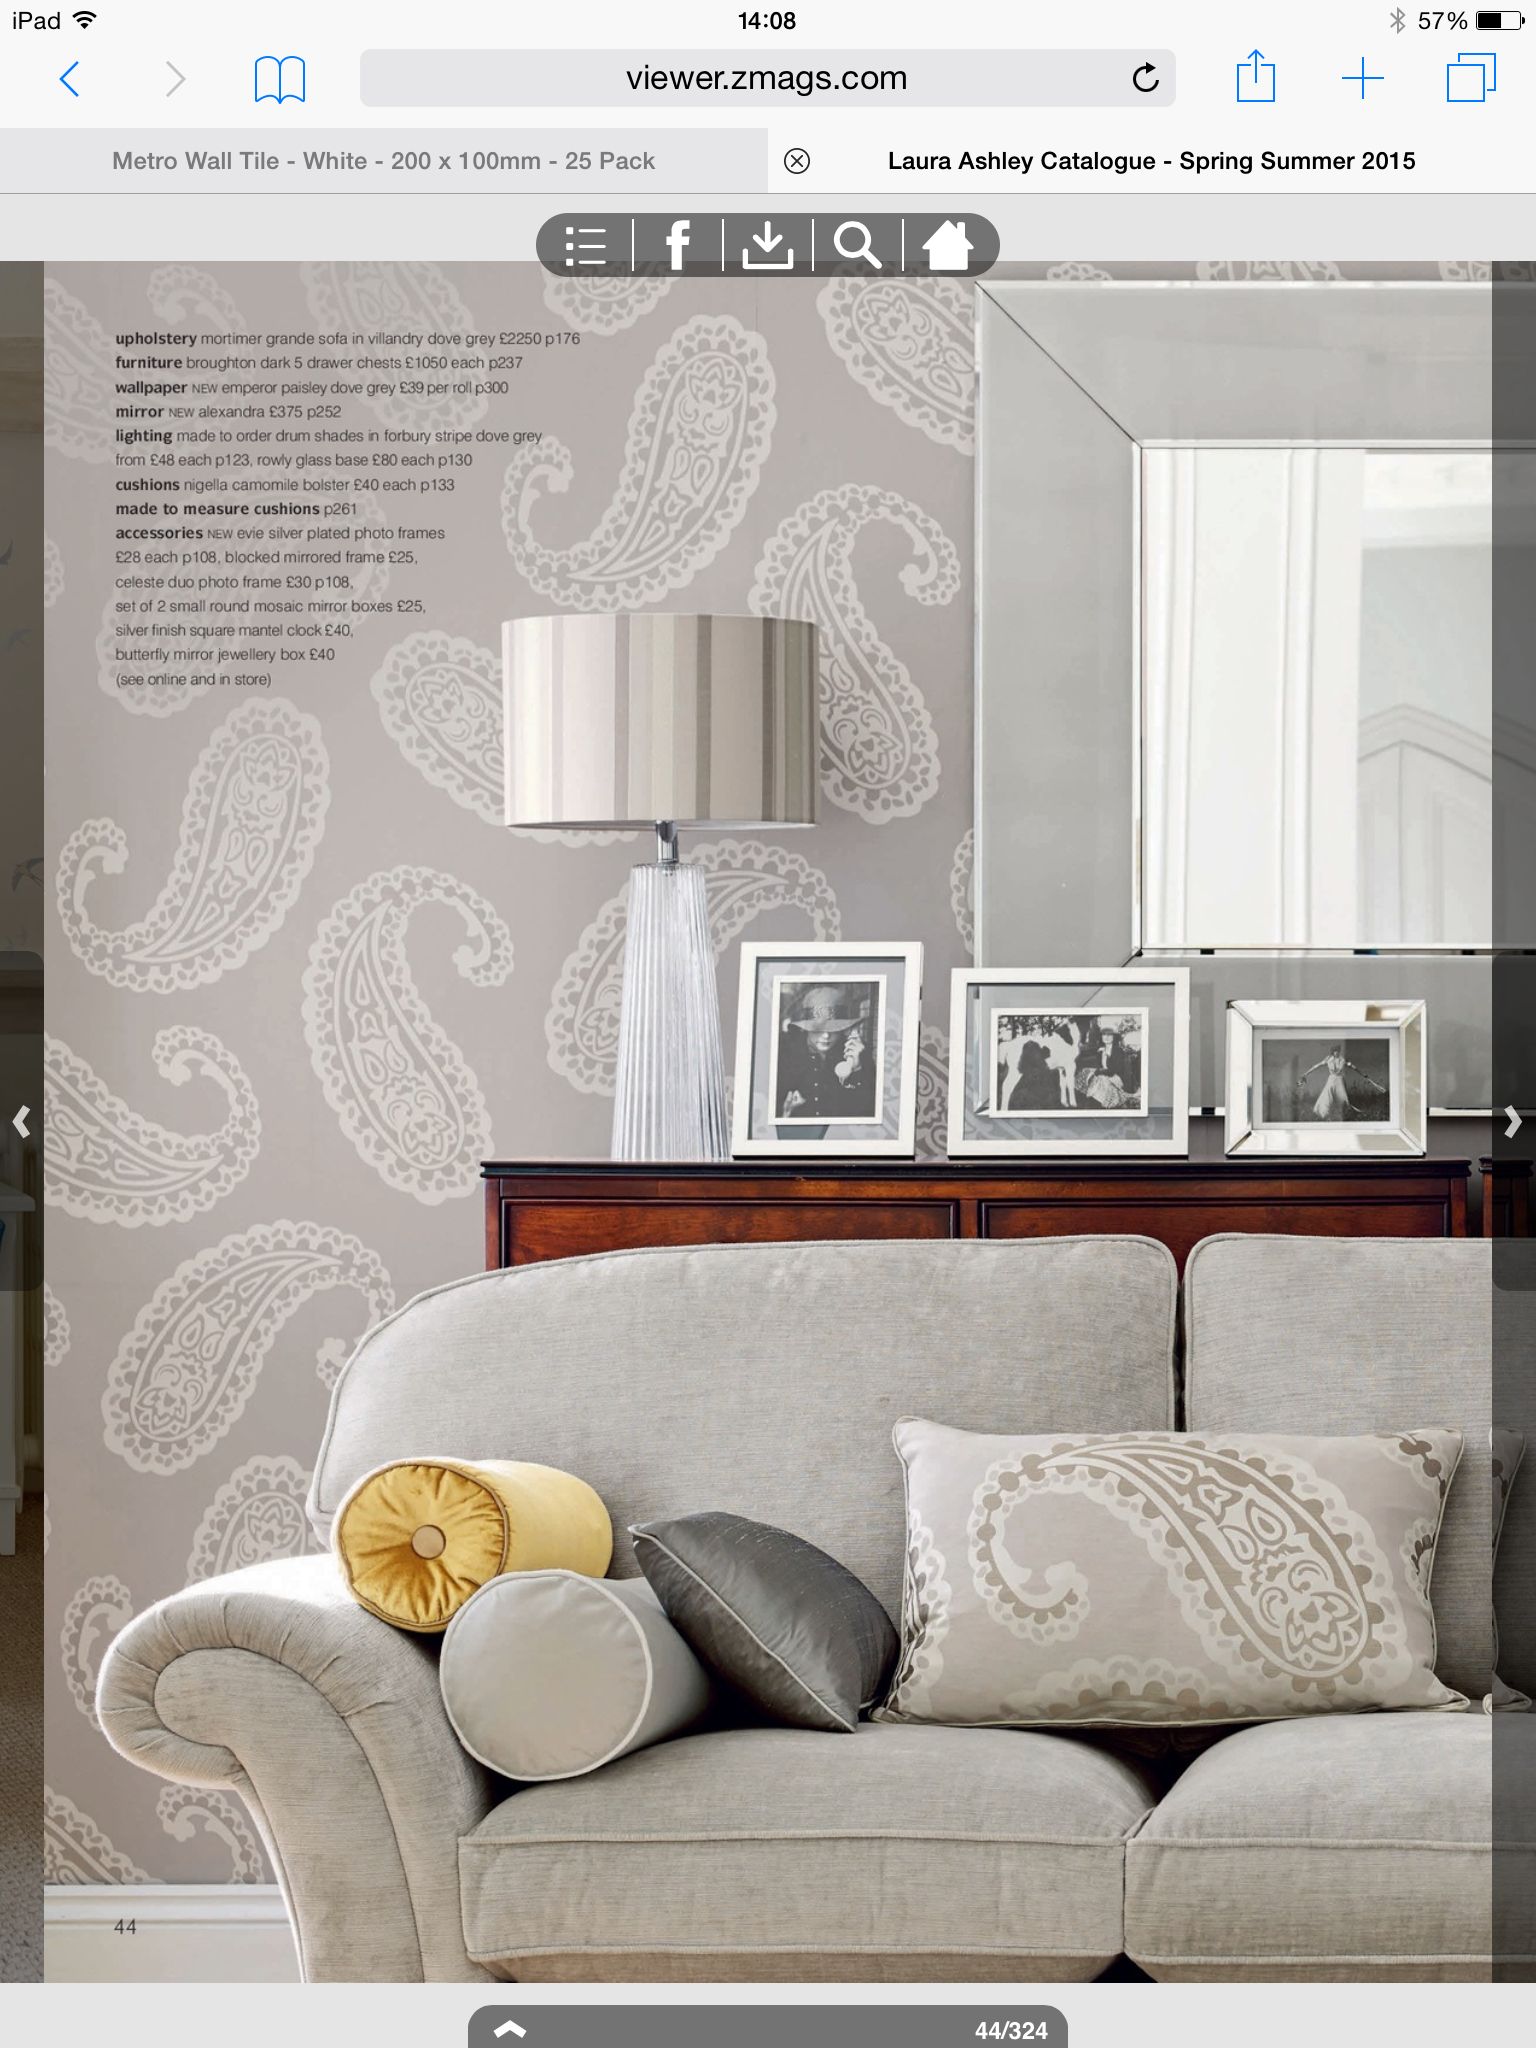 laura ashley paisley tapete,möbel,innenarchitektur,zimmer,wohnzimmer,couch